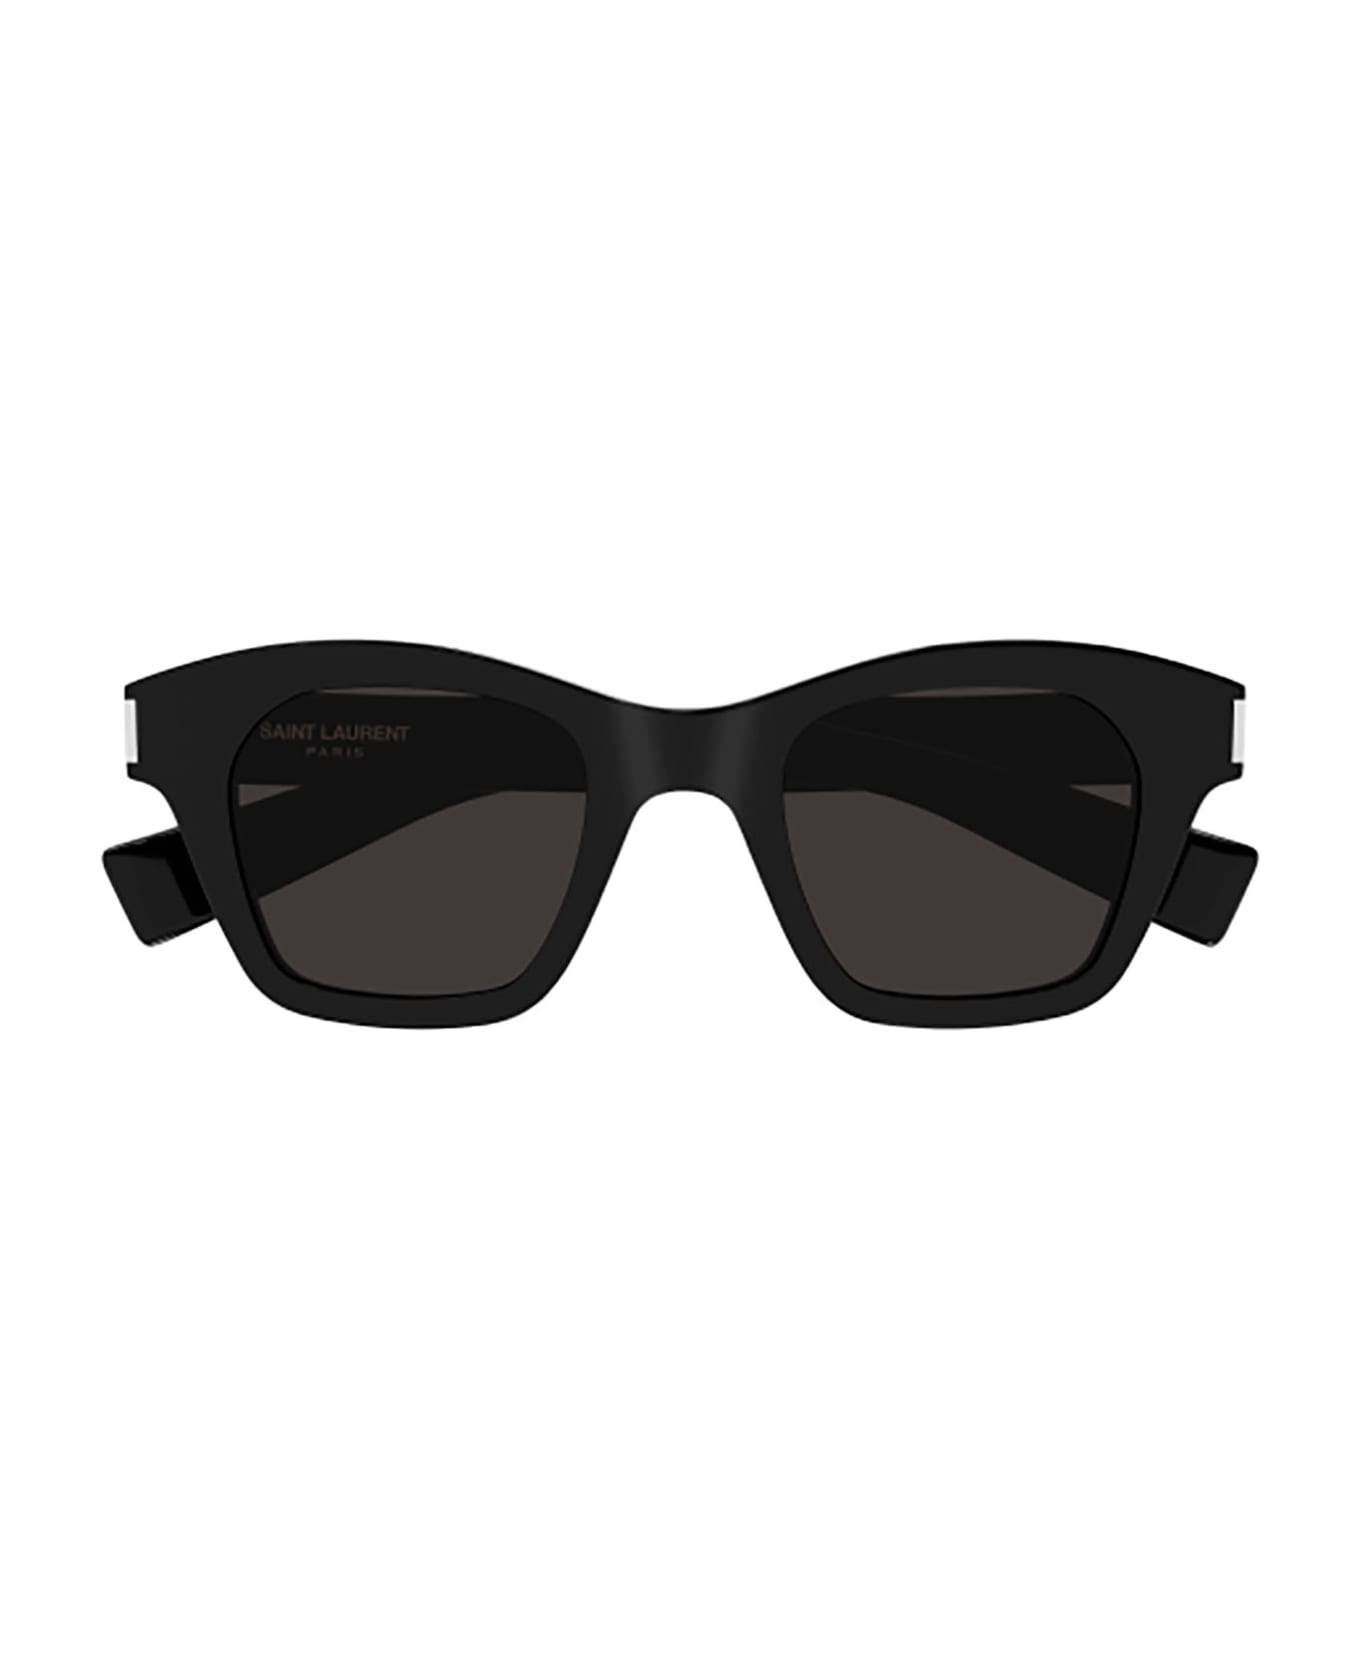 Saint Laurent Eyewear Sl 592 Sunglasses - 001 black black black サングラス